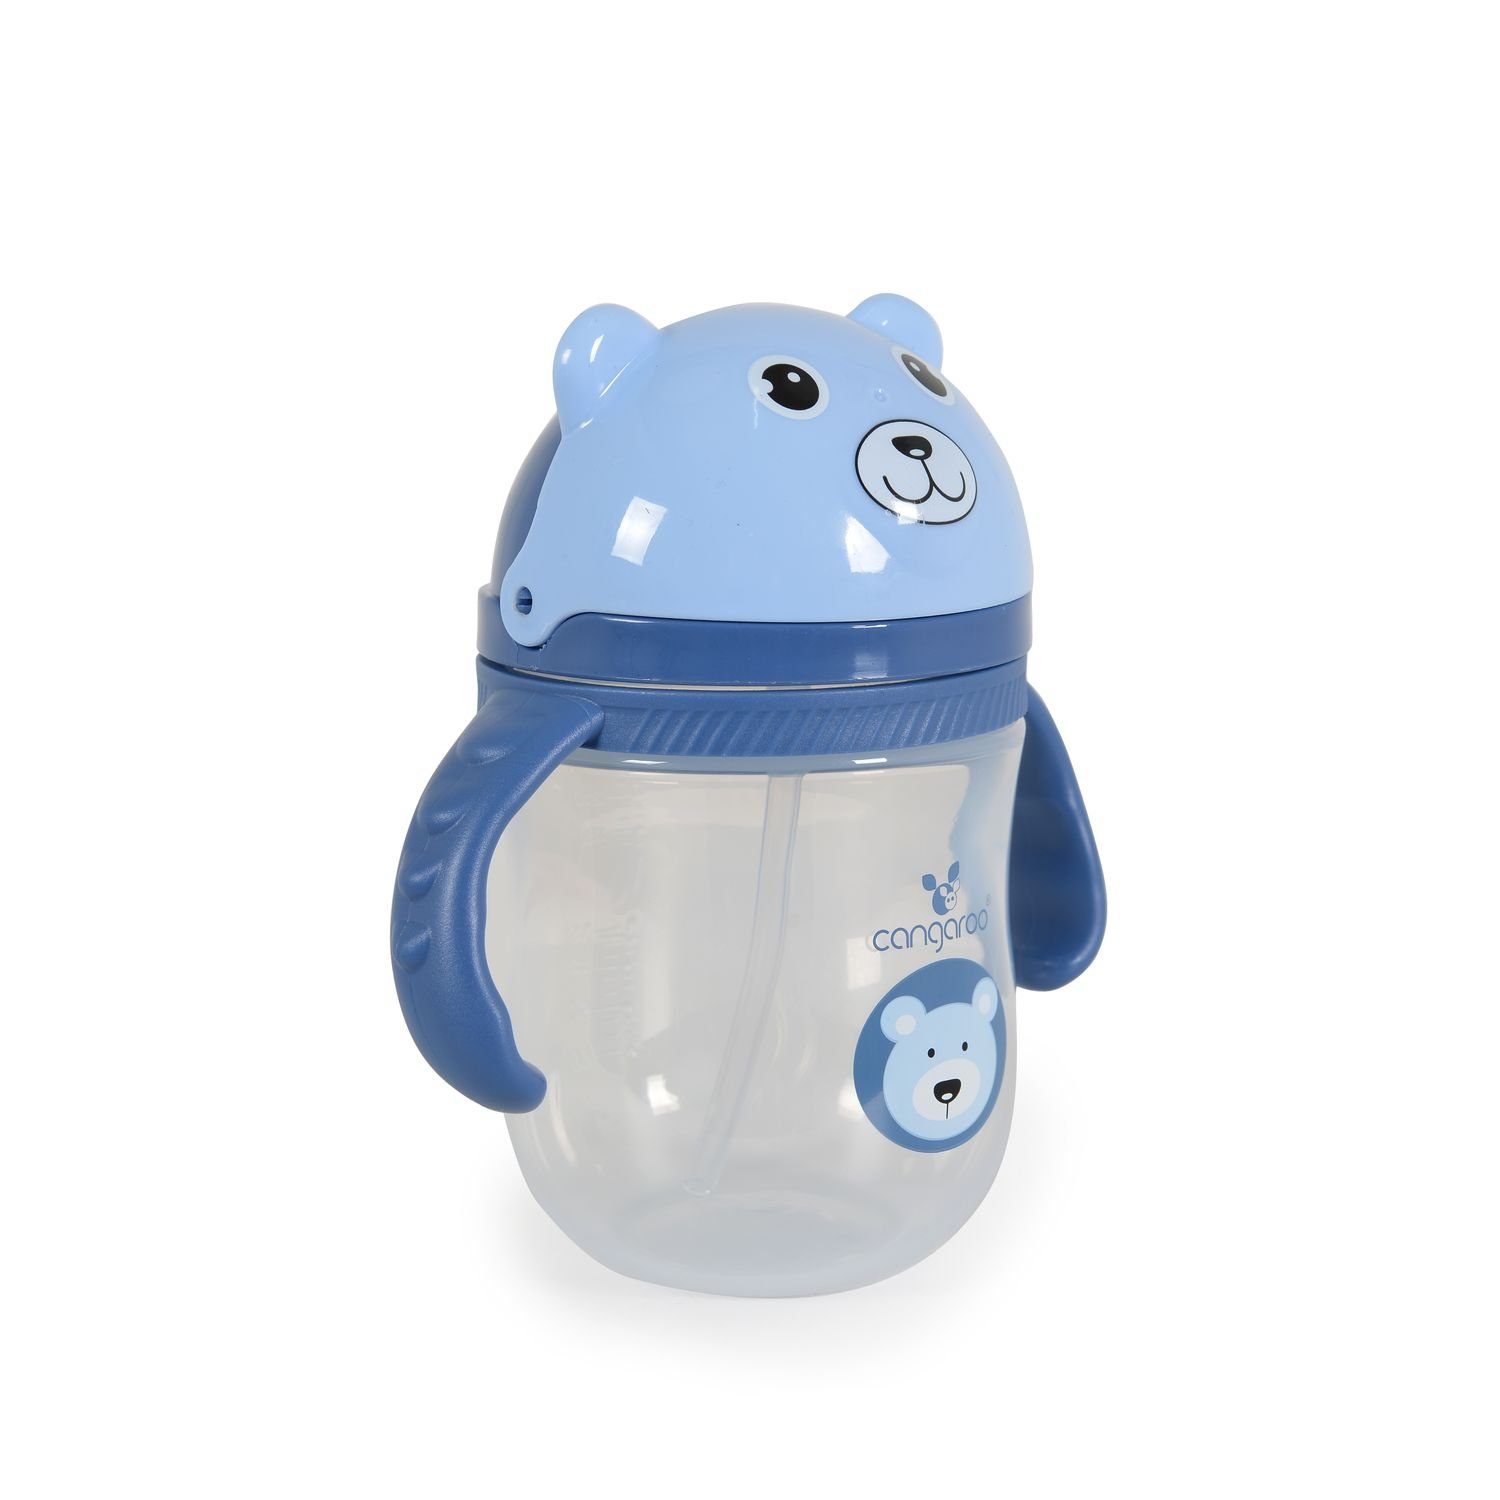 Baby-Trinklernbecher blau Griff Schutzdeckel bequemer Trinkhalm Berry, 240 ml Cangaroo Trinkflasche